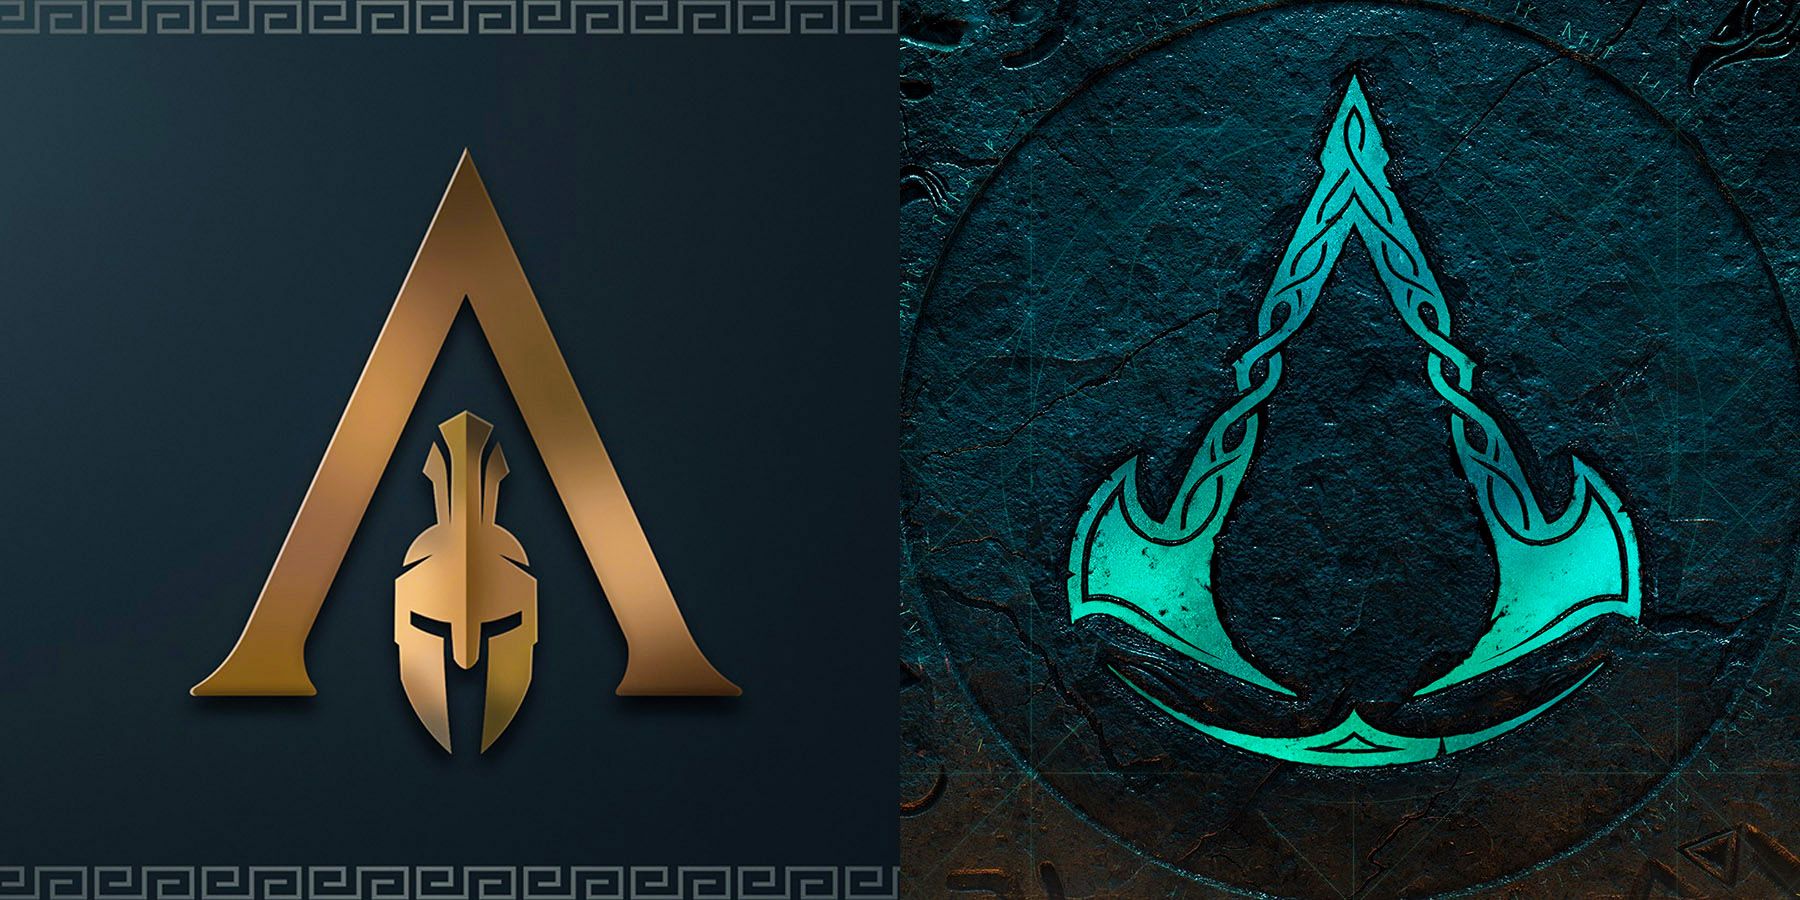 Symbole Creed Odyssey Assassin i symbole Valhalli straciły wiele znaczenia